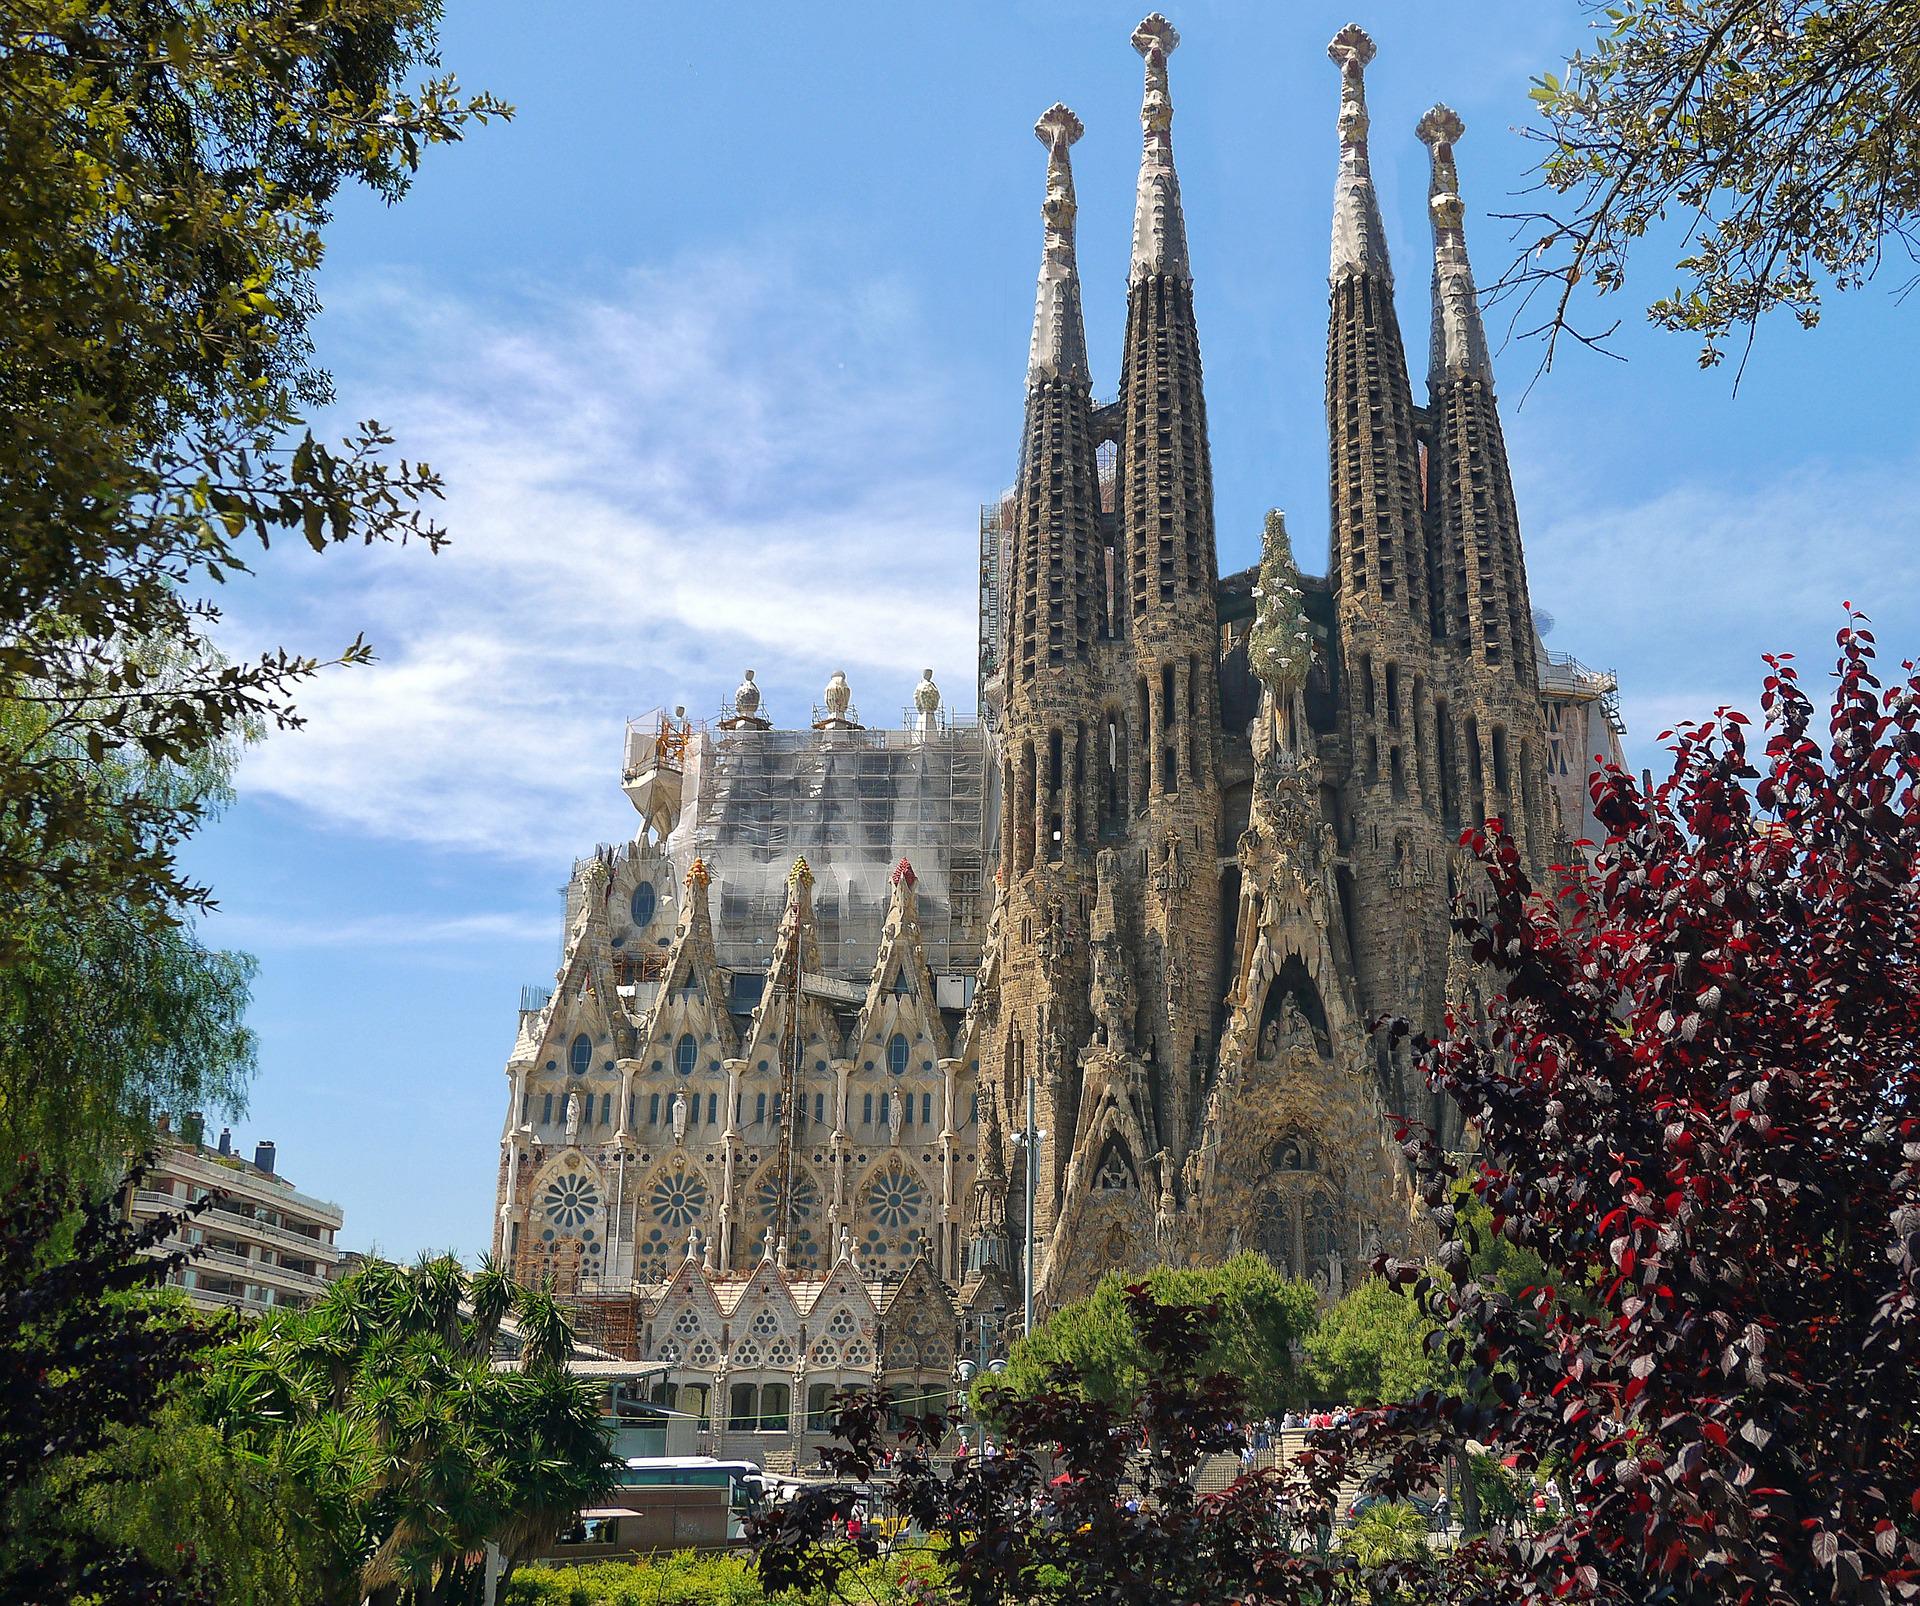 Die Sagrada Familia in Barcelona